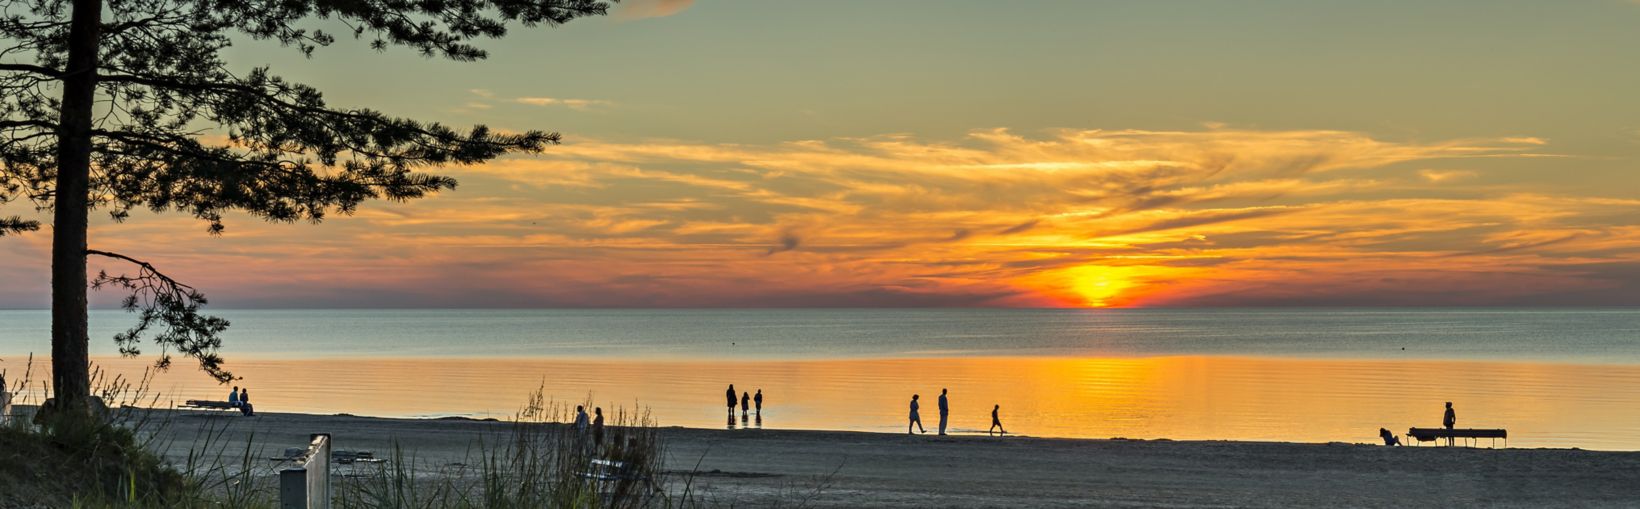 Colorida puesta de sol en la playa de arena de Jurmala - el famoso complejo en la región báltica, Letonia